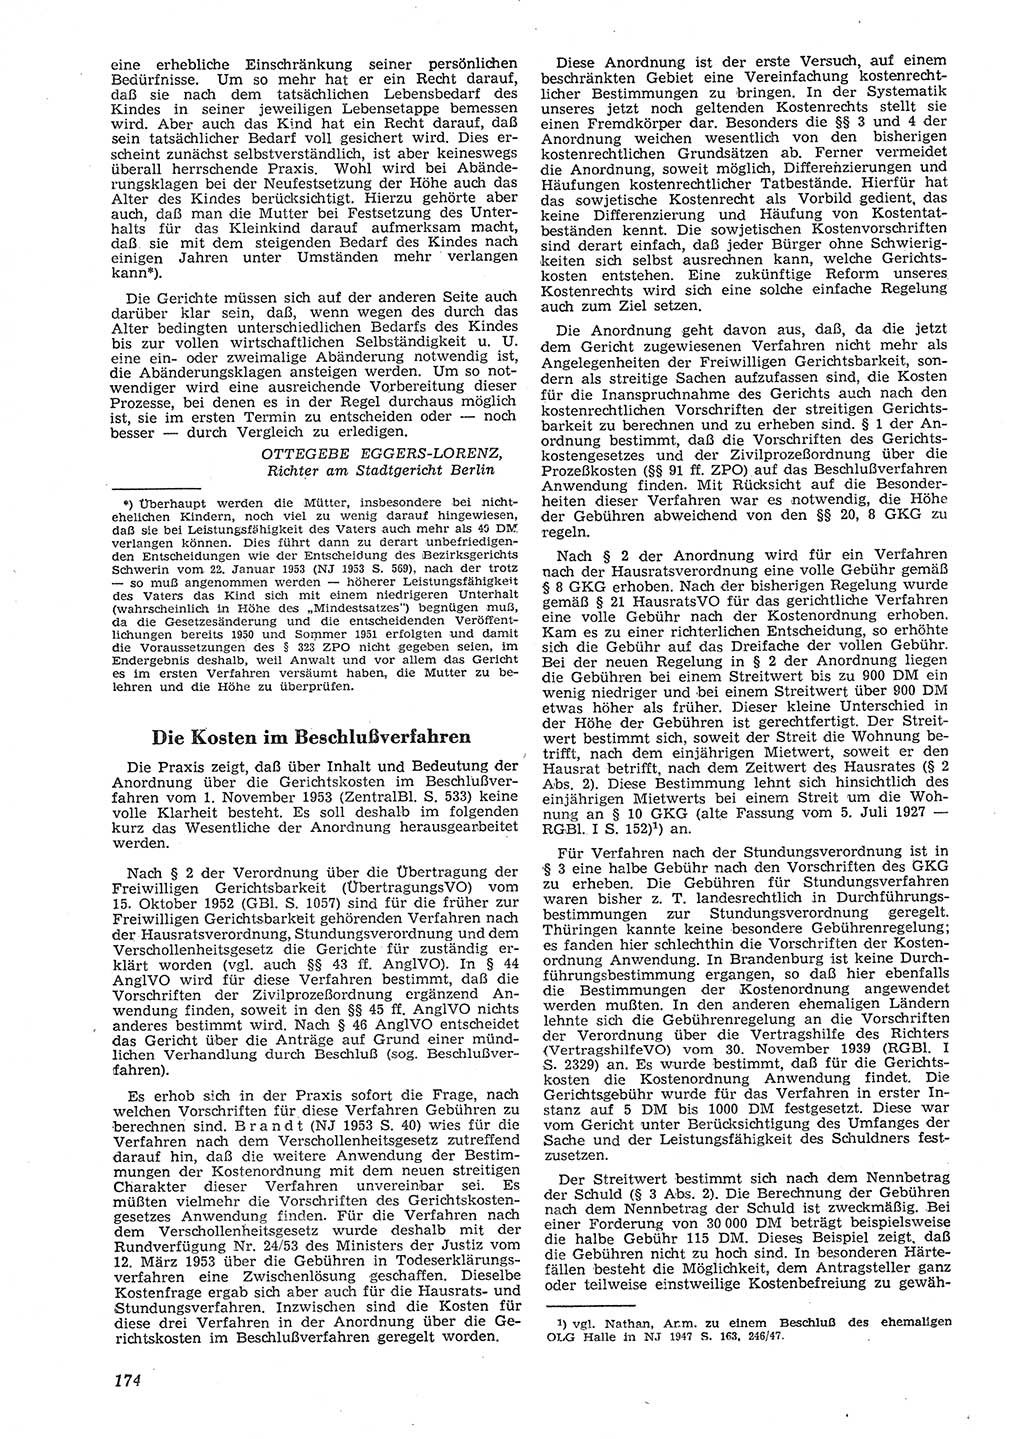 Neue Justiz (NJ), Zeitschrift für Recht und Rechtswissenschaft [Deutsche Demokratische Republik (DDR)], 8. Jahrgang 1954, Seite 174 (NJ DDR 1954, S. 174)